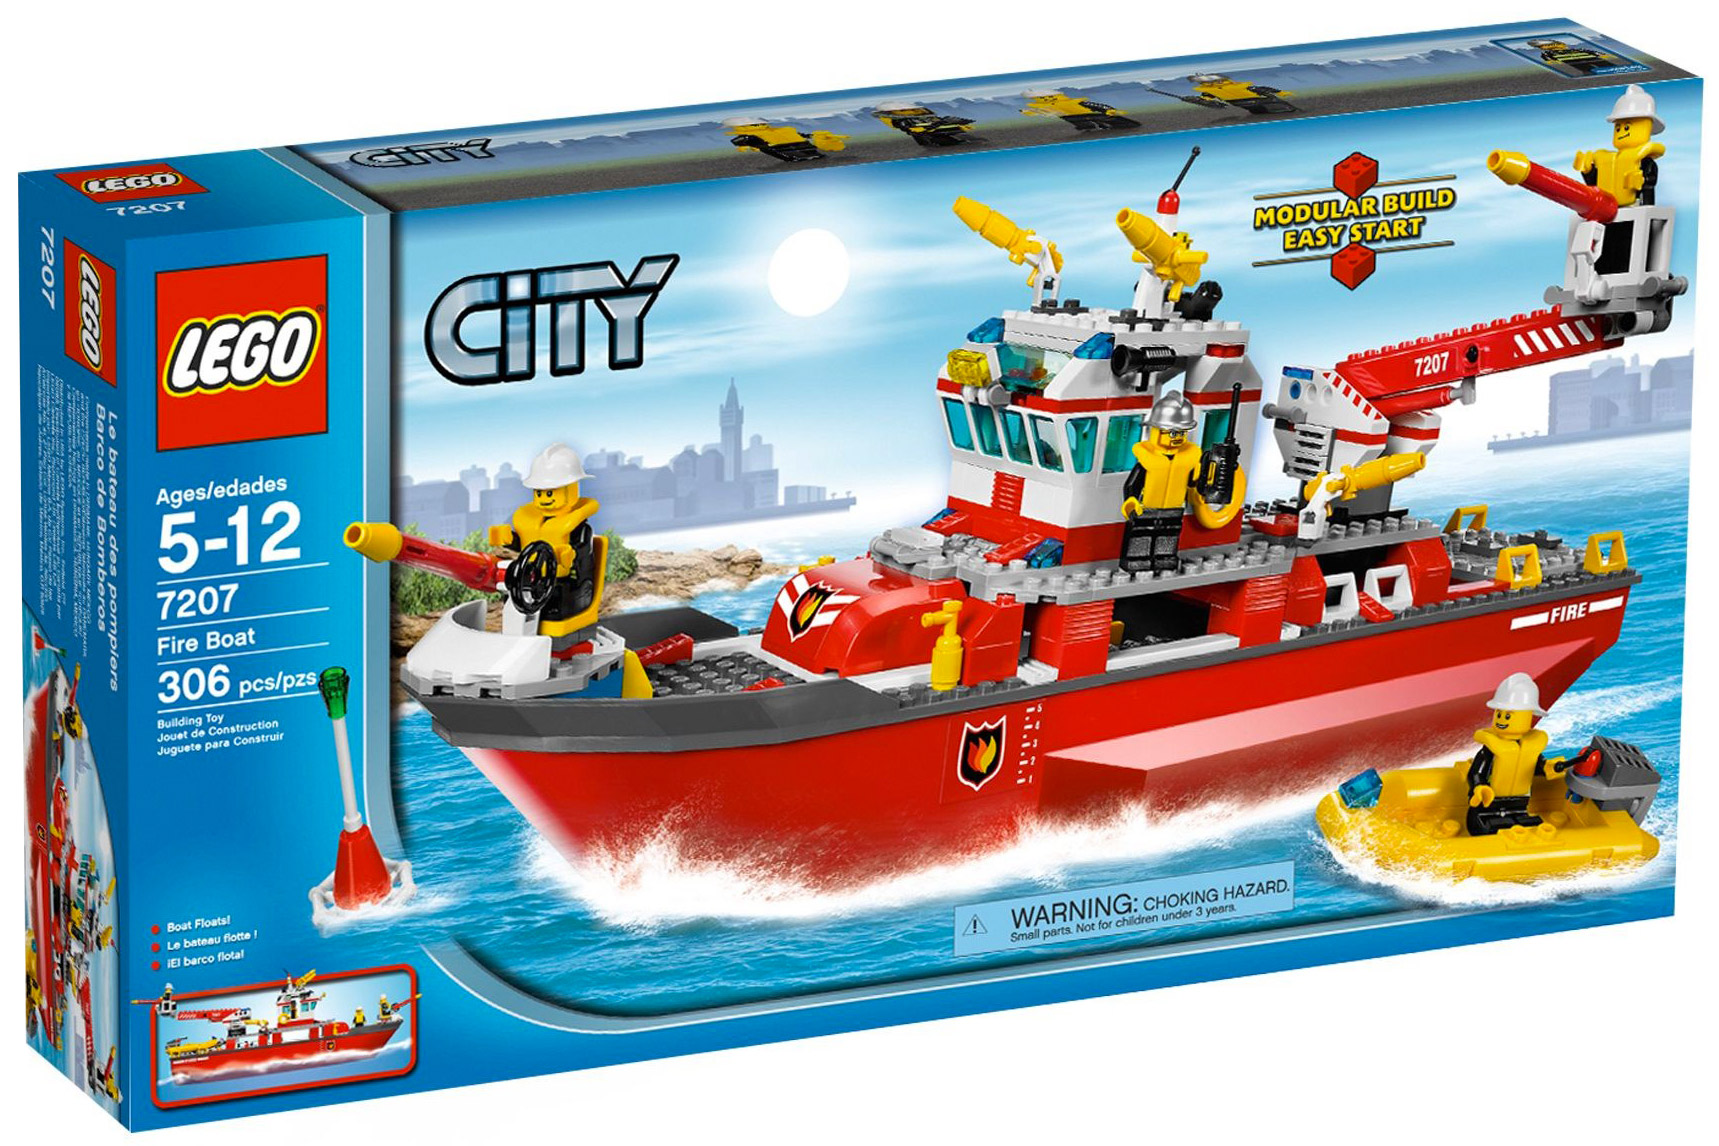 LEGO City 7207 pas cher, Le bateau des pompiers